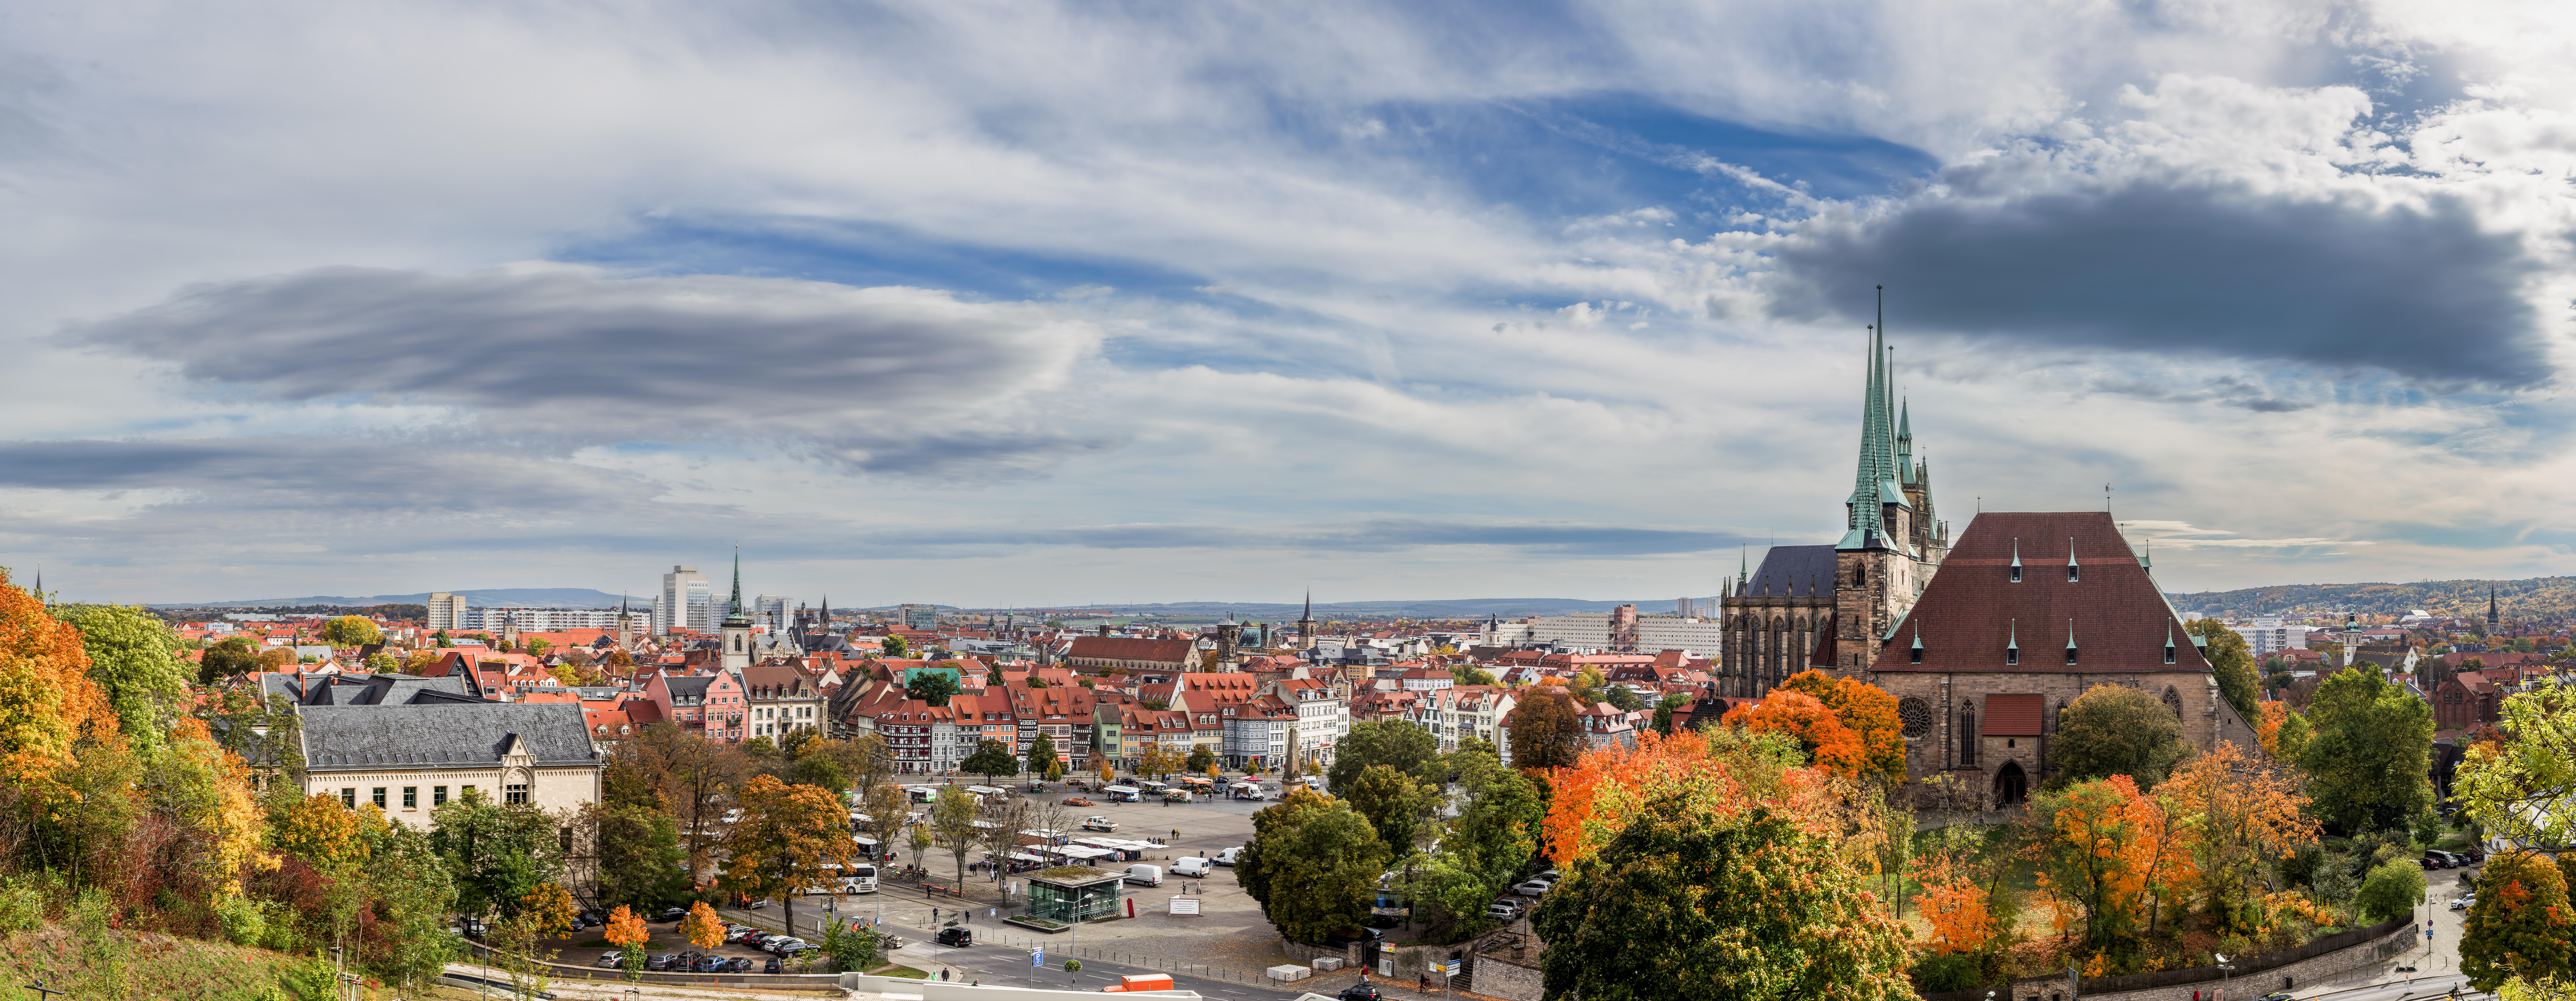 Panorama von Erfurt mit dem Erfurter Dom und der Altstadt von Erfurt